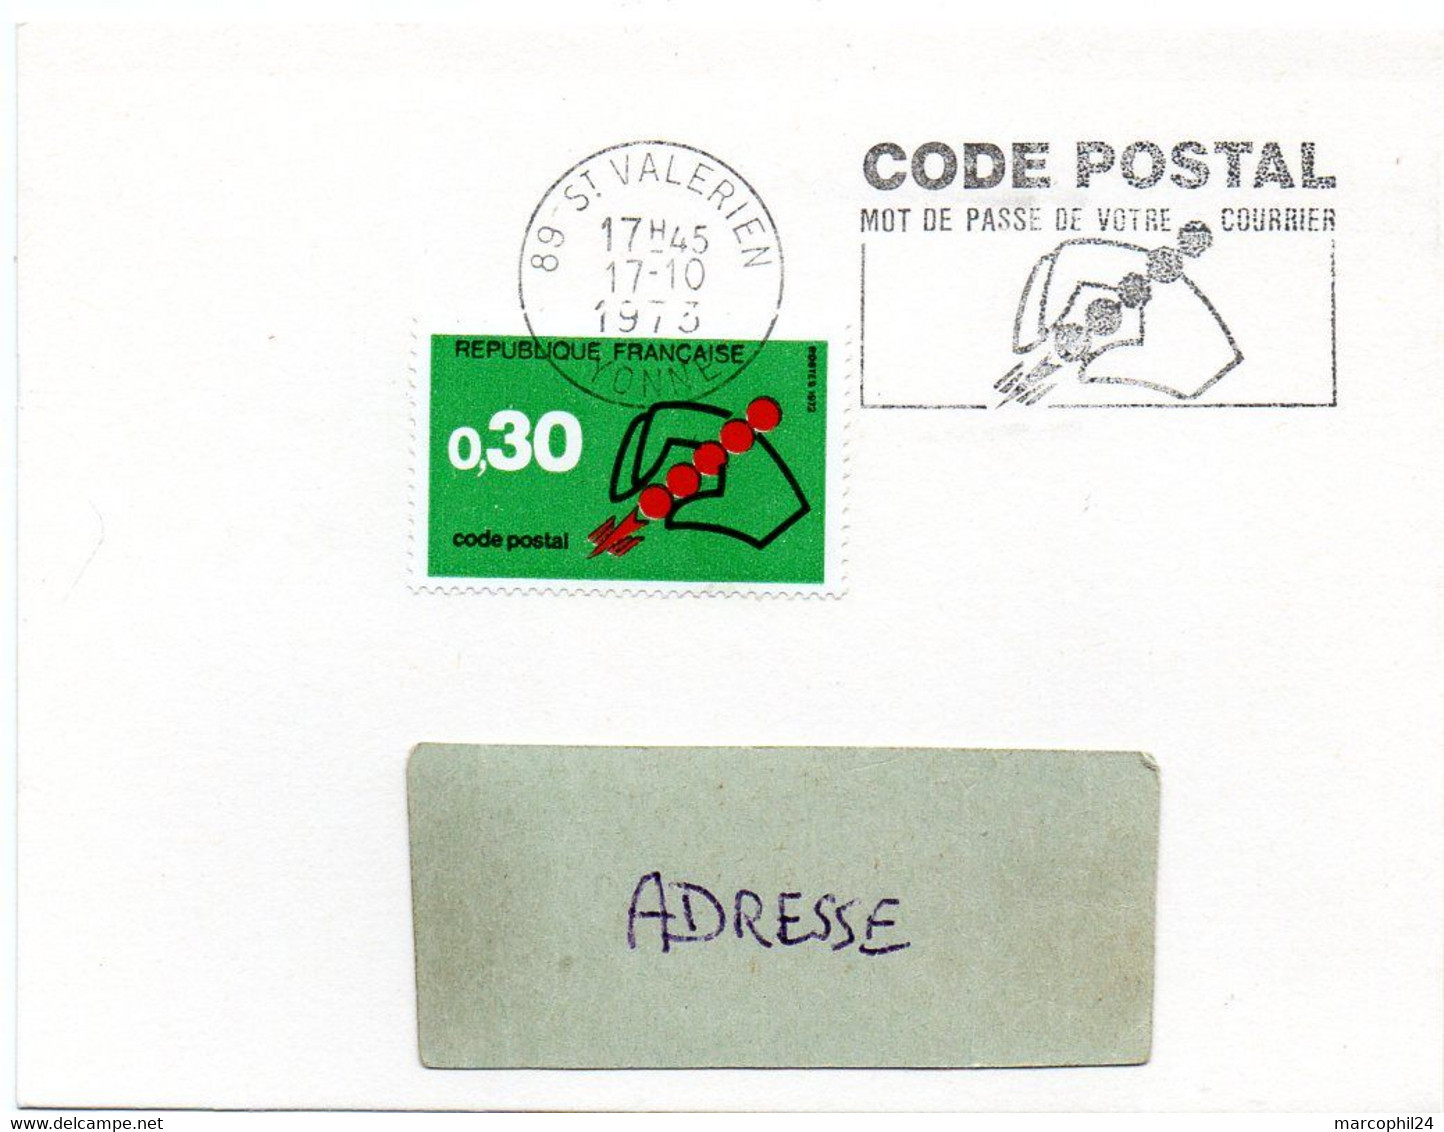 YONNE - Dépt N° 89 = ST VALERIEN 1973 =  FLAMME à DROITE CONCORDANTE = SECAP Illustrée ' CODE POSTAL / Mot Passe' - Código Postal